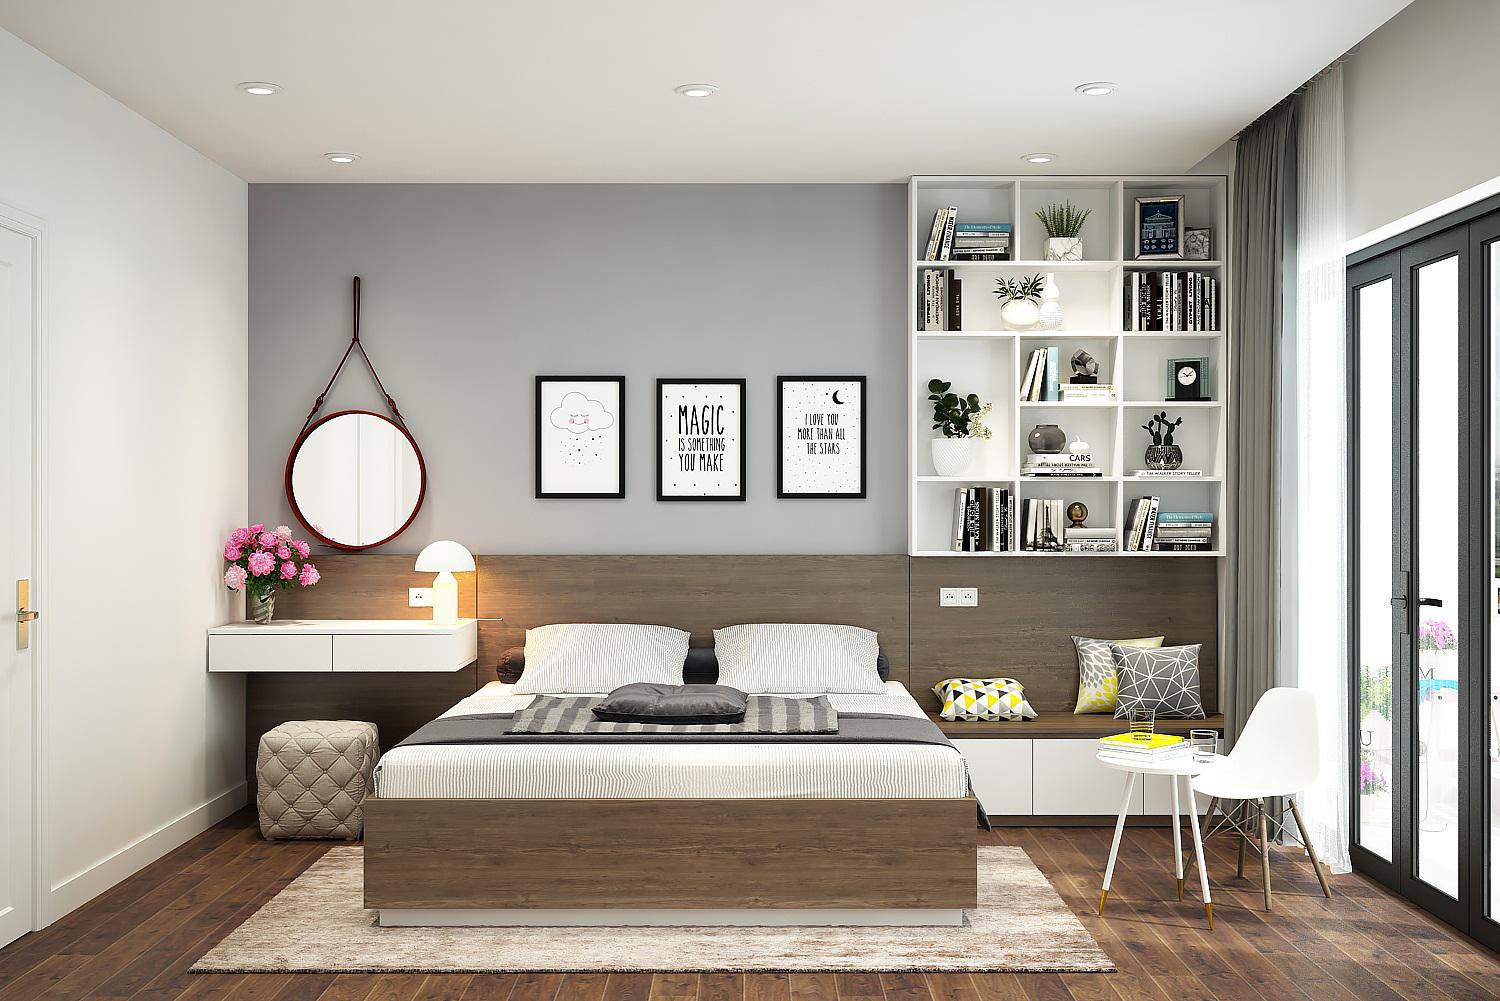 Thiết kế nội thất phòng ngủ: Hãy để chúng tôi cùng bạn thiết kế một không gian phòng ngủ đáng mơ ước với các thiết kế nội thất độc đáo, hiện đại và sang trọng. Với sự sáng tạo và tinh tế, chúng tôi sẽ giúp bạn tạo ra một không gian nghỉ ngơi lý tưởng trong căn nhà của mình.